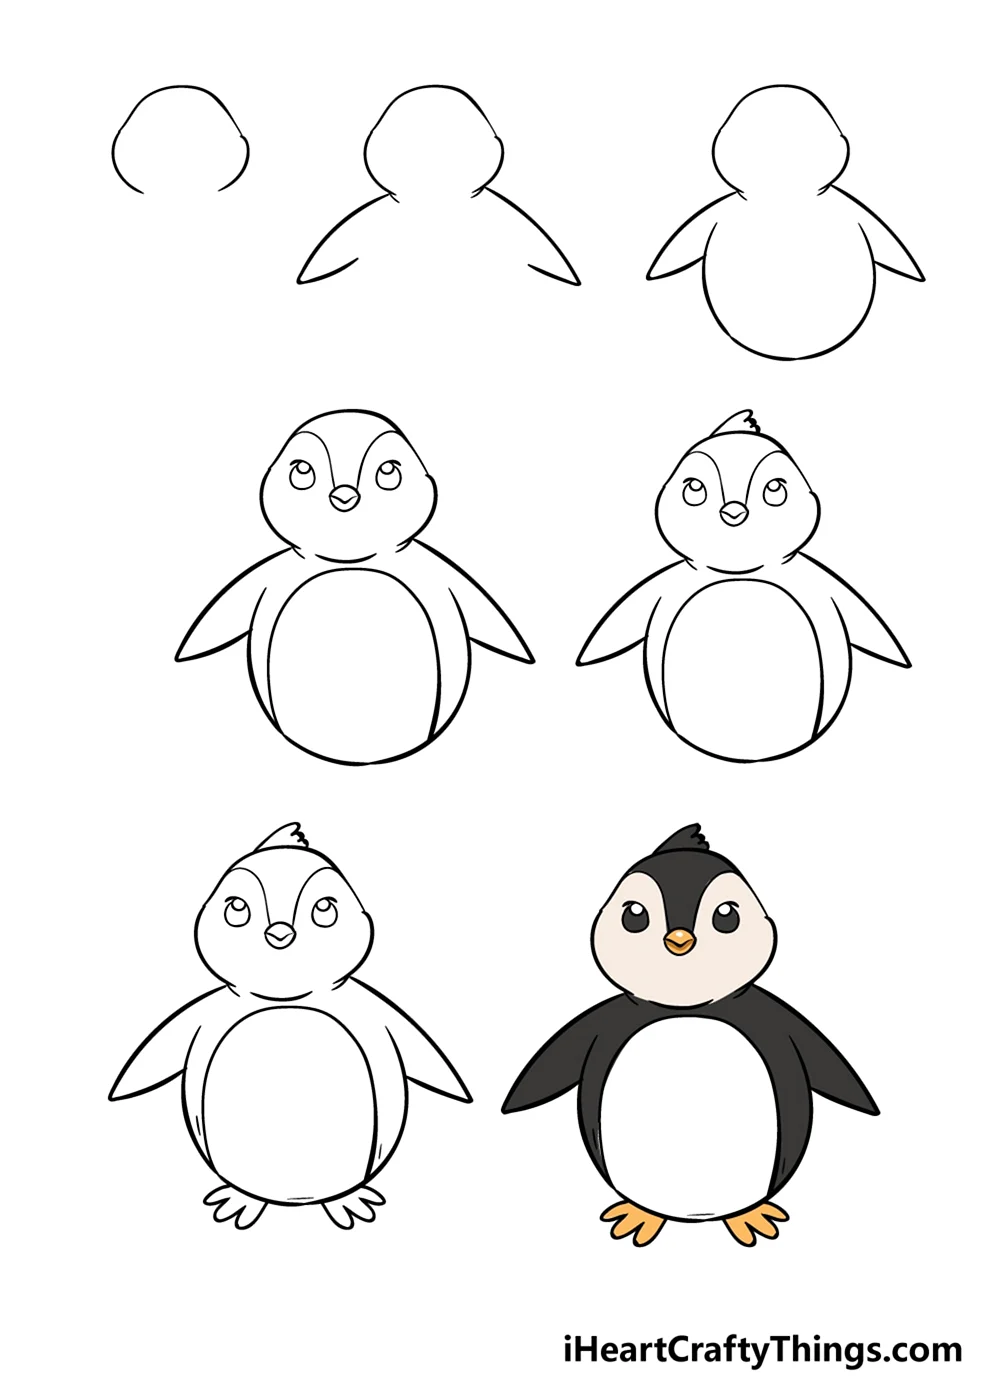 Пингвин рисунок карандашом легко